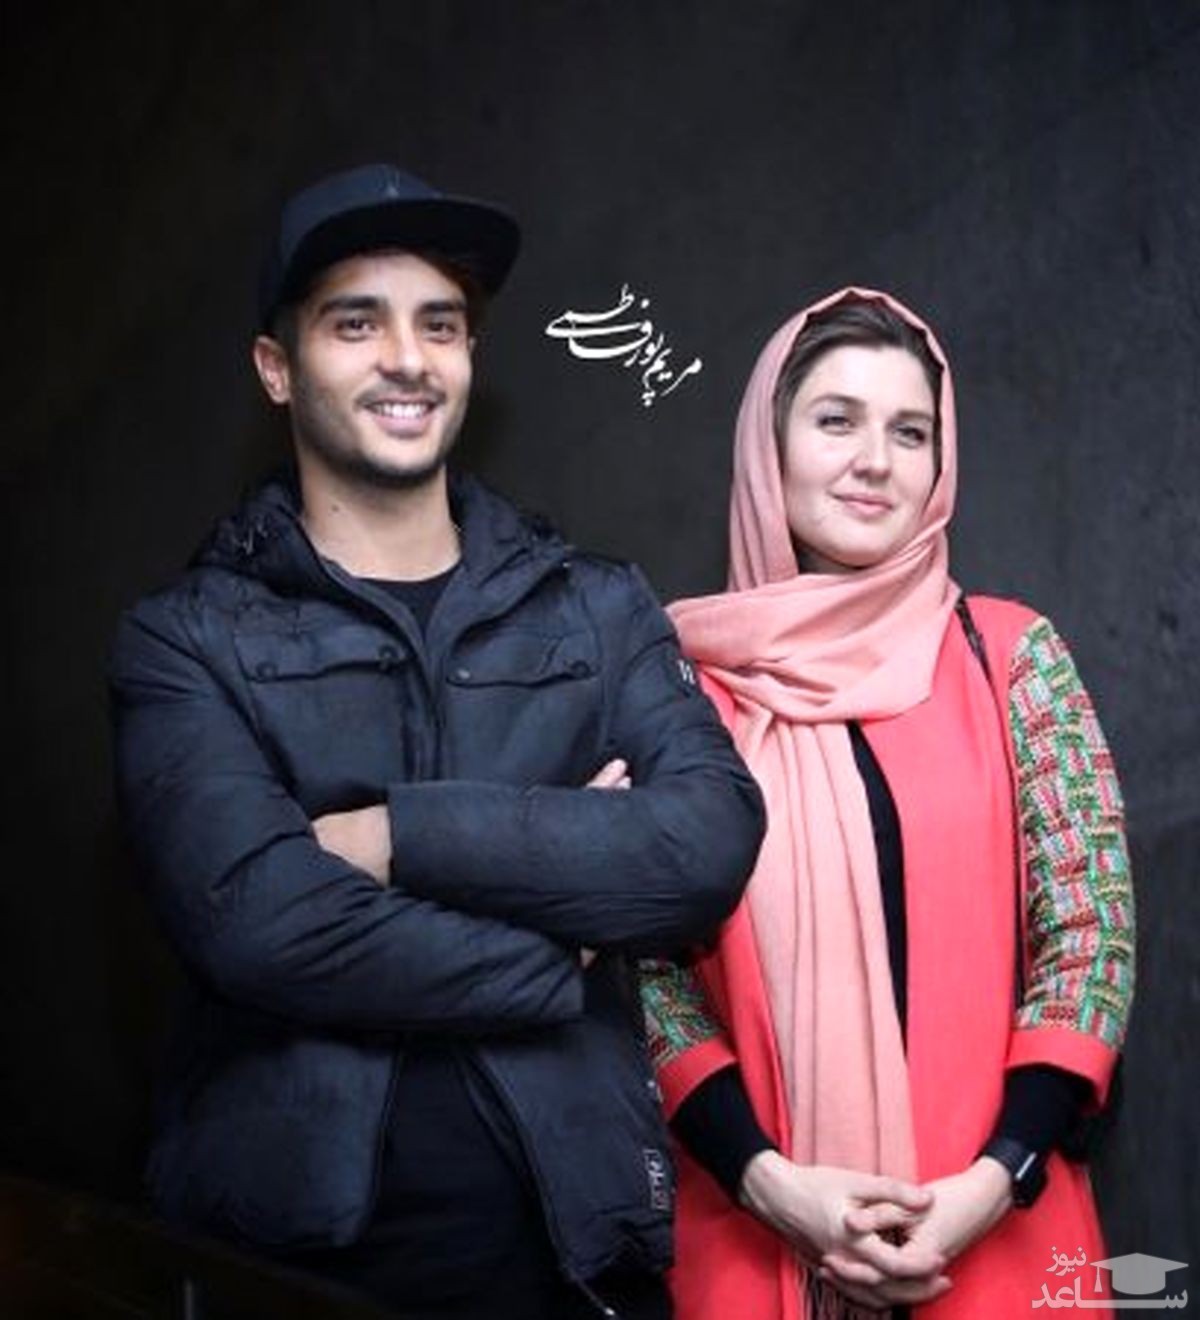 عشقولانه های ساعد سهیلی و گلوریا هاردی در جشنواره فجر